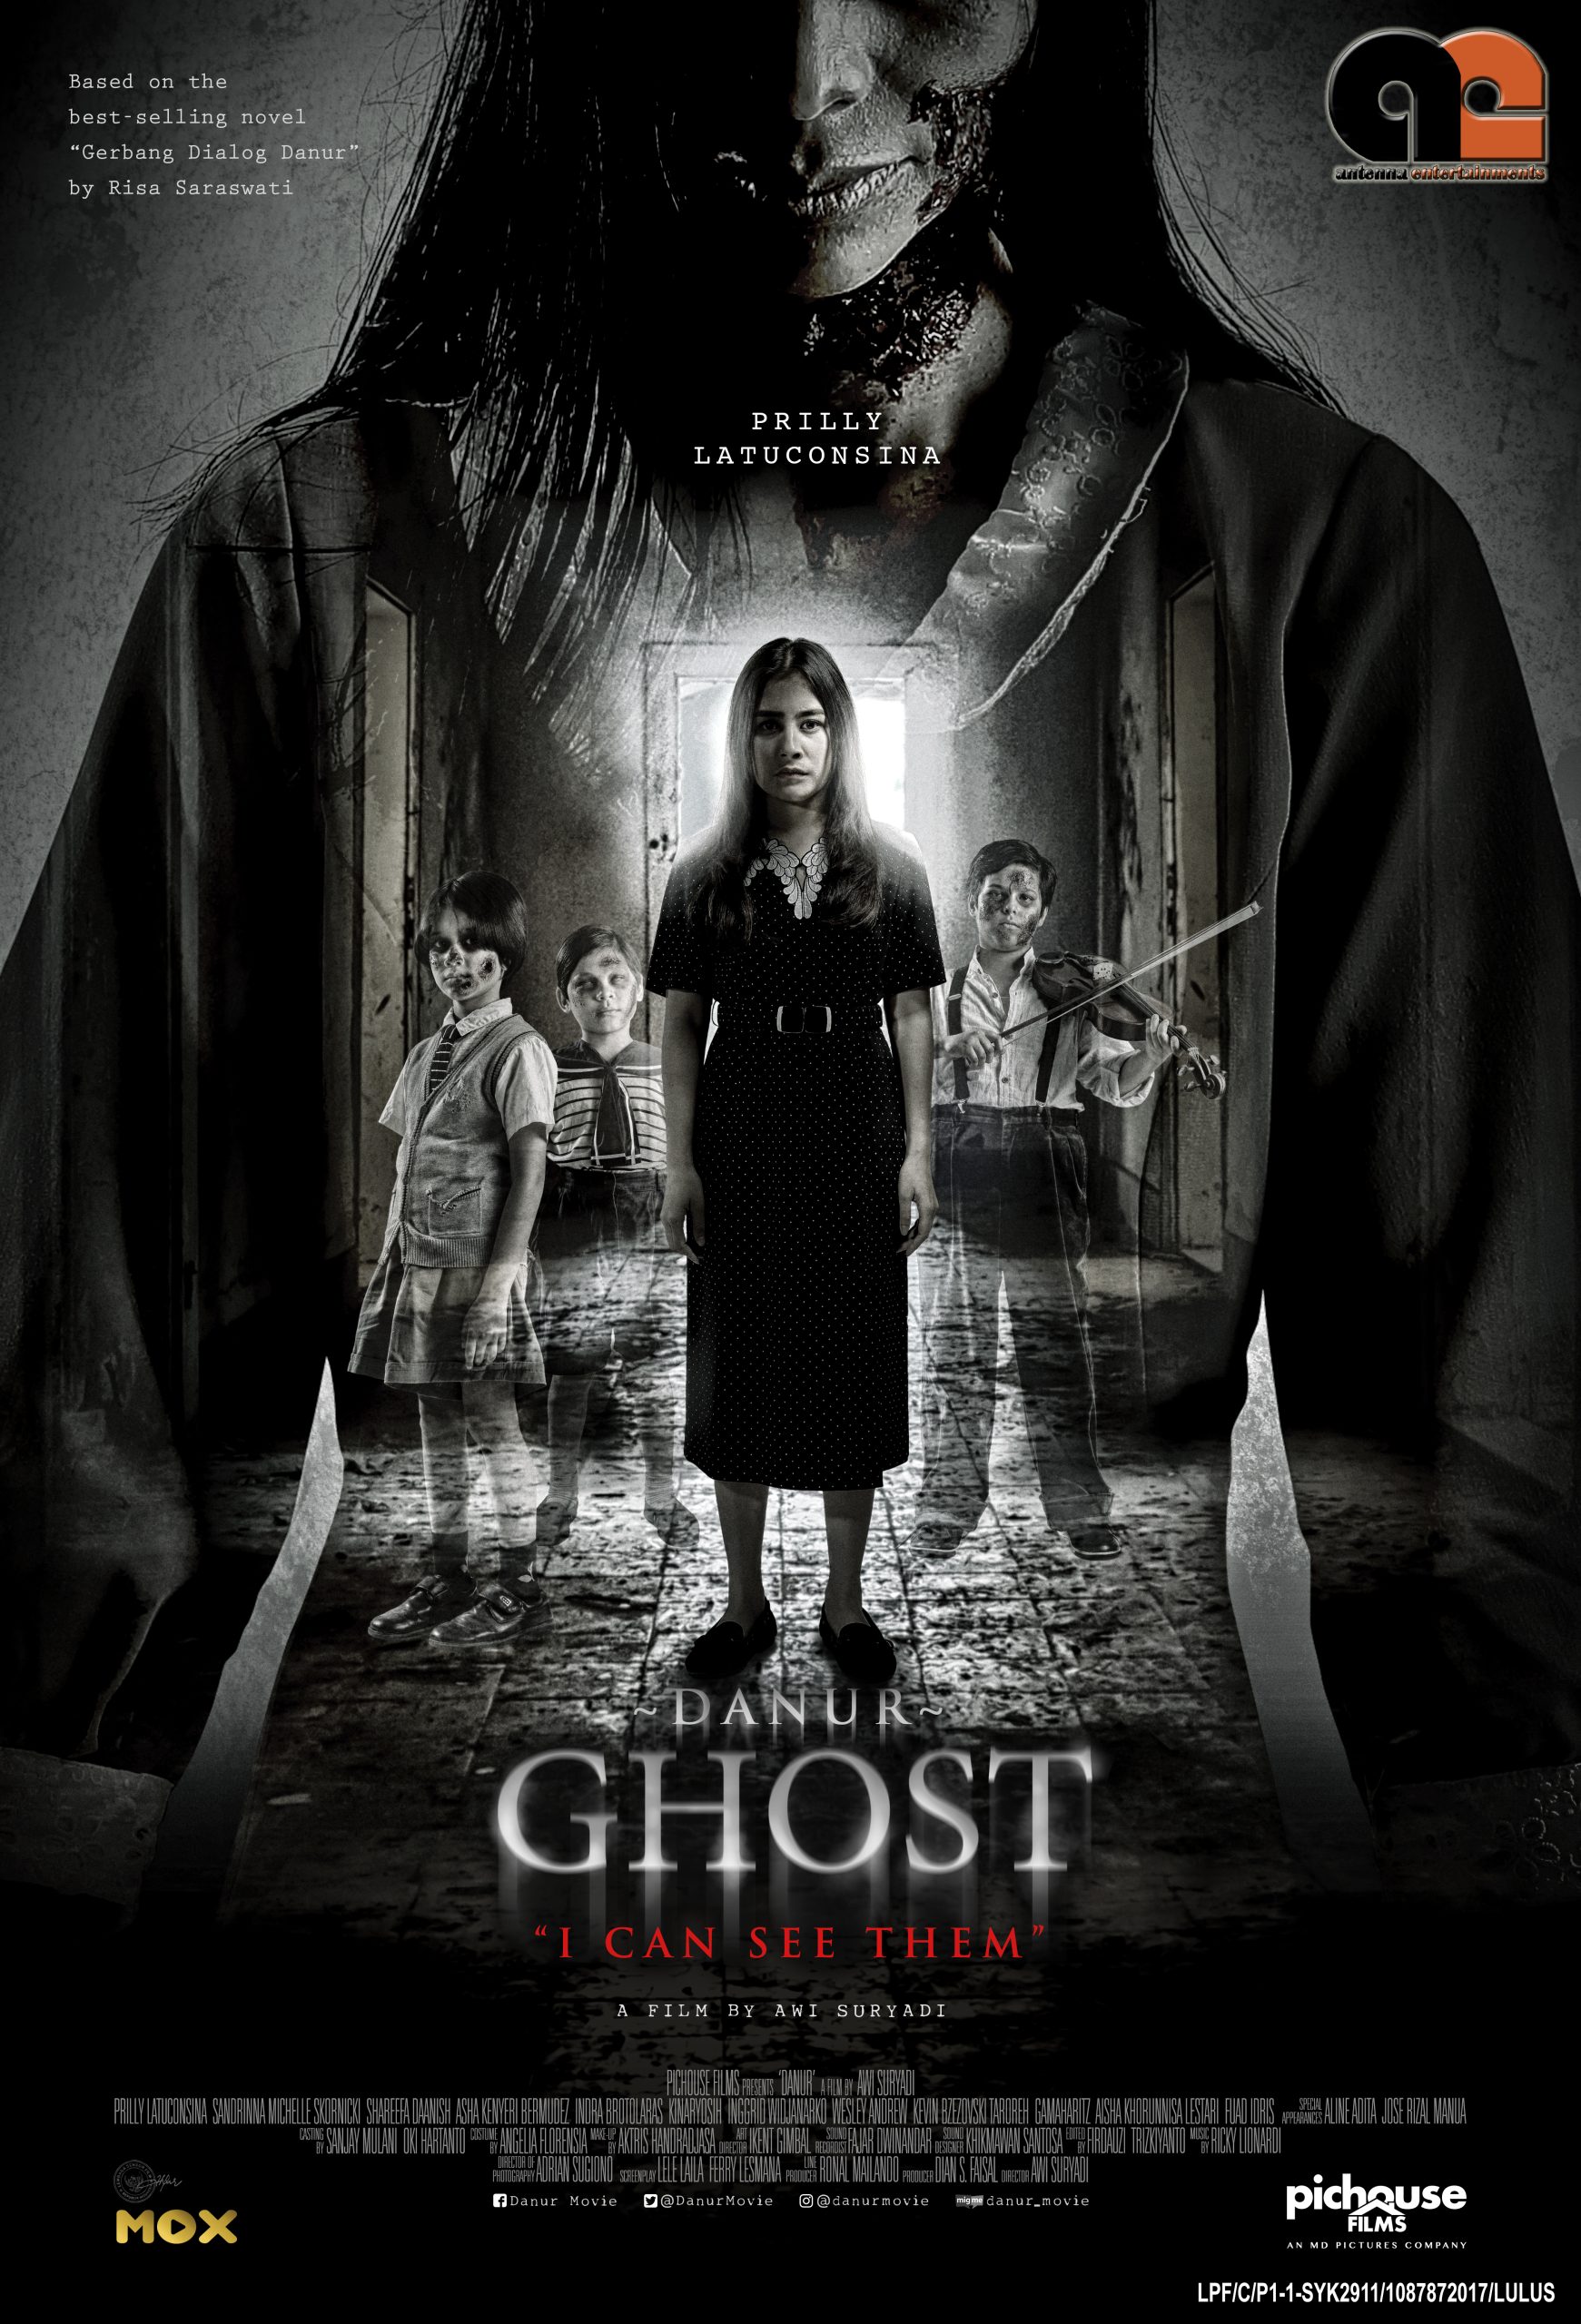 Ghost-Danur Poster